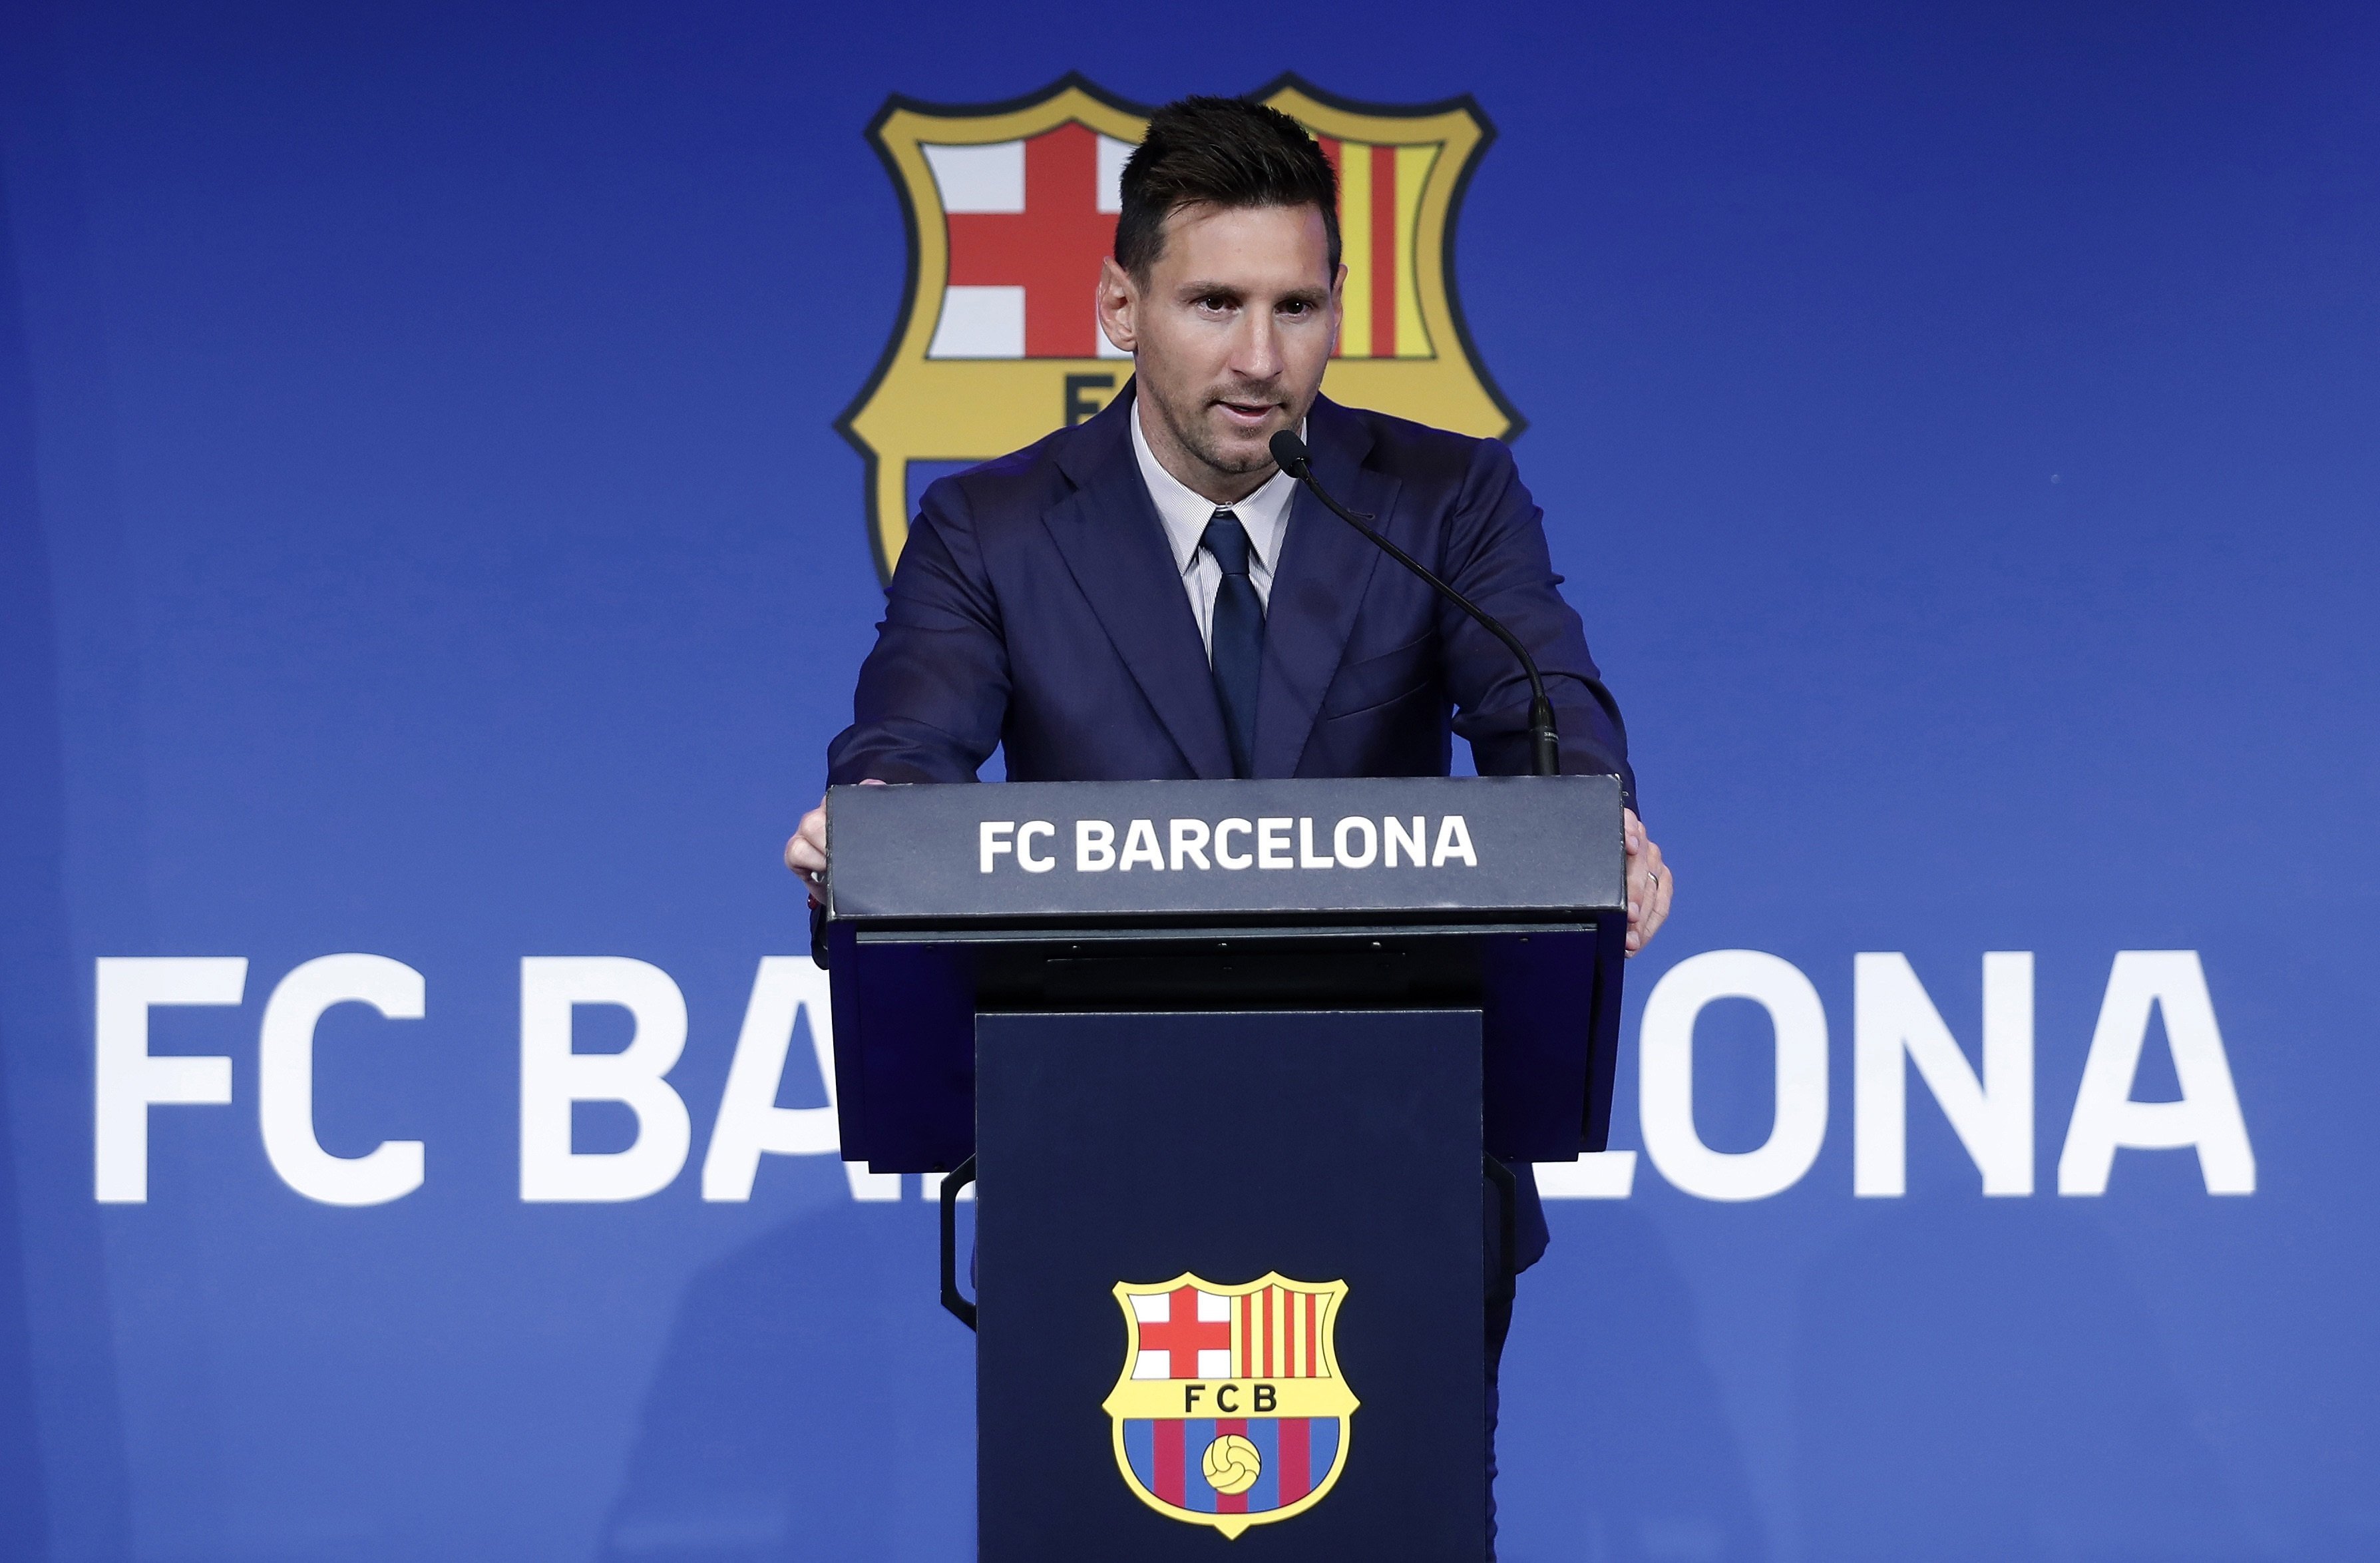 El impecable discurso de Messi despidiéndose del Barça